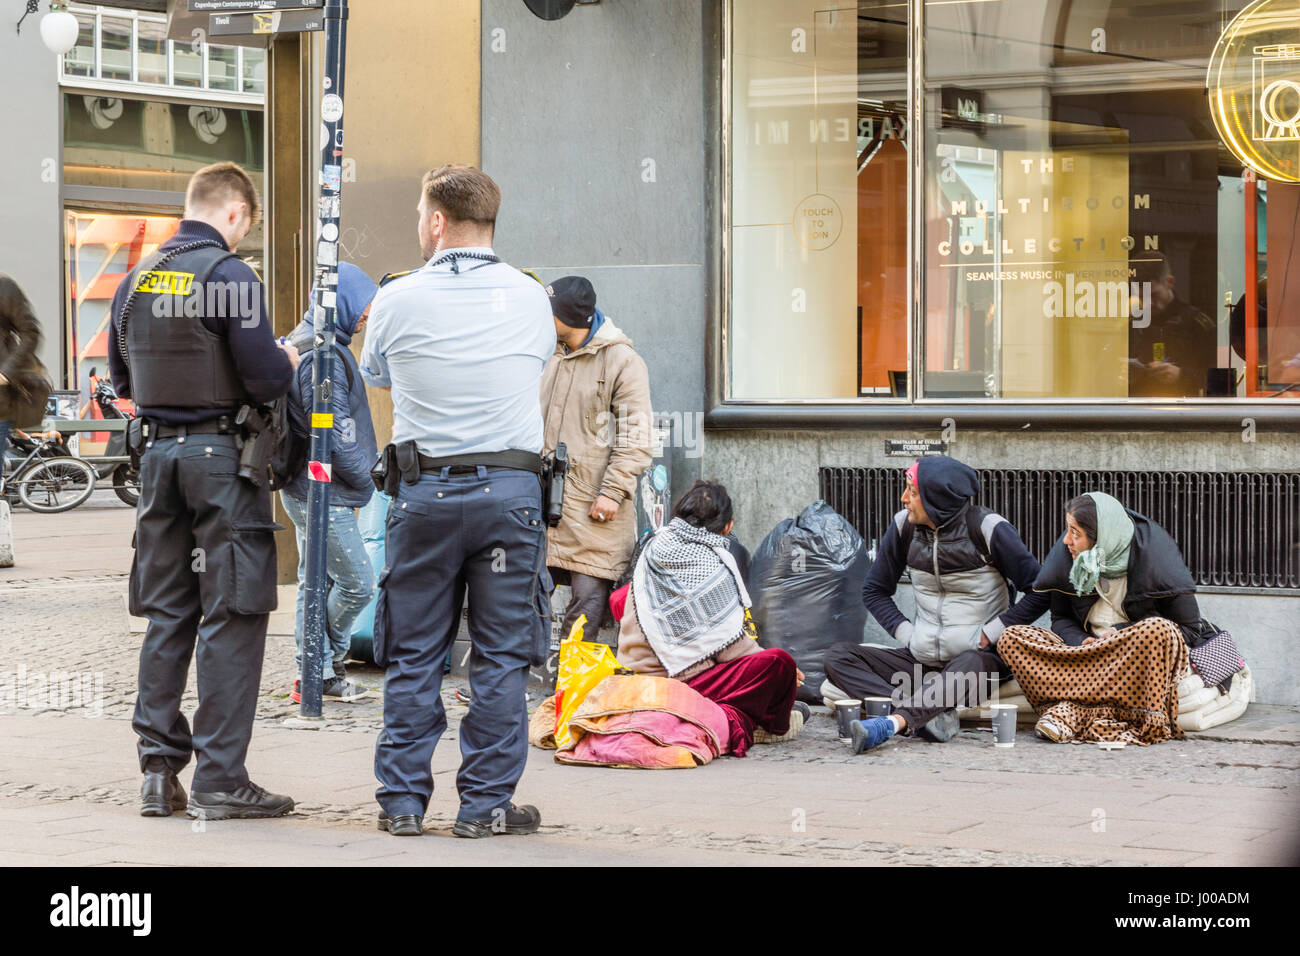 Deux policiers à la recherche les documents de certains immigrants, qui sont assis dans la rue. Copenhague, Danemark - 6 Avril 2017 Banque D'Images